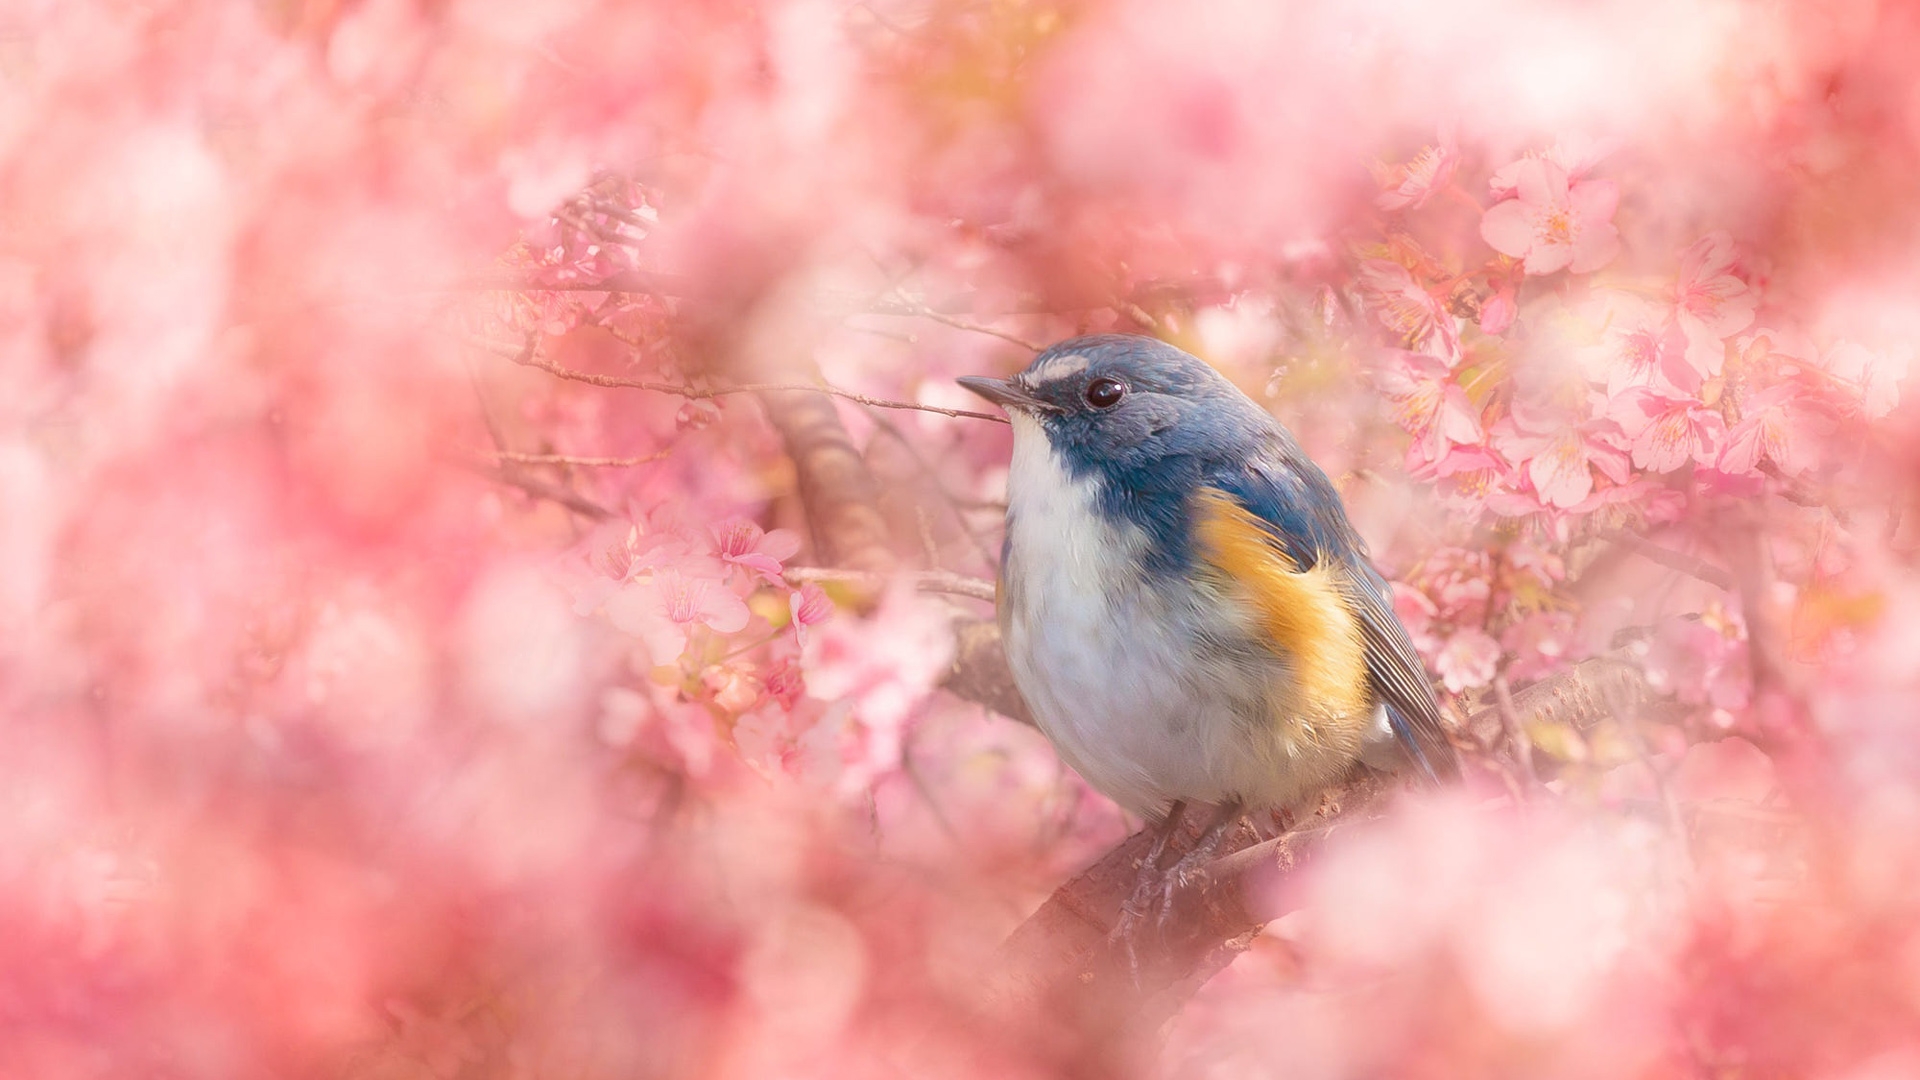 Фото розовые цветы, цветок, обои синяя птица, взгромоздившись, птицы - бесплатные картинки на Fonwall